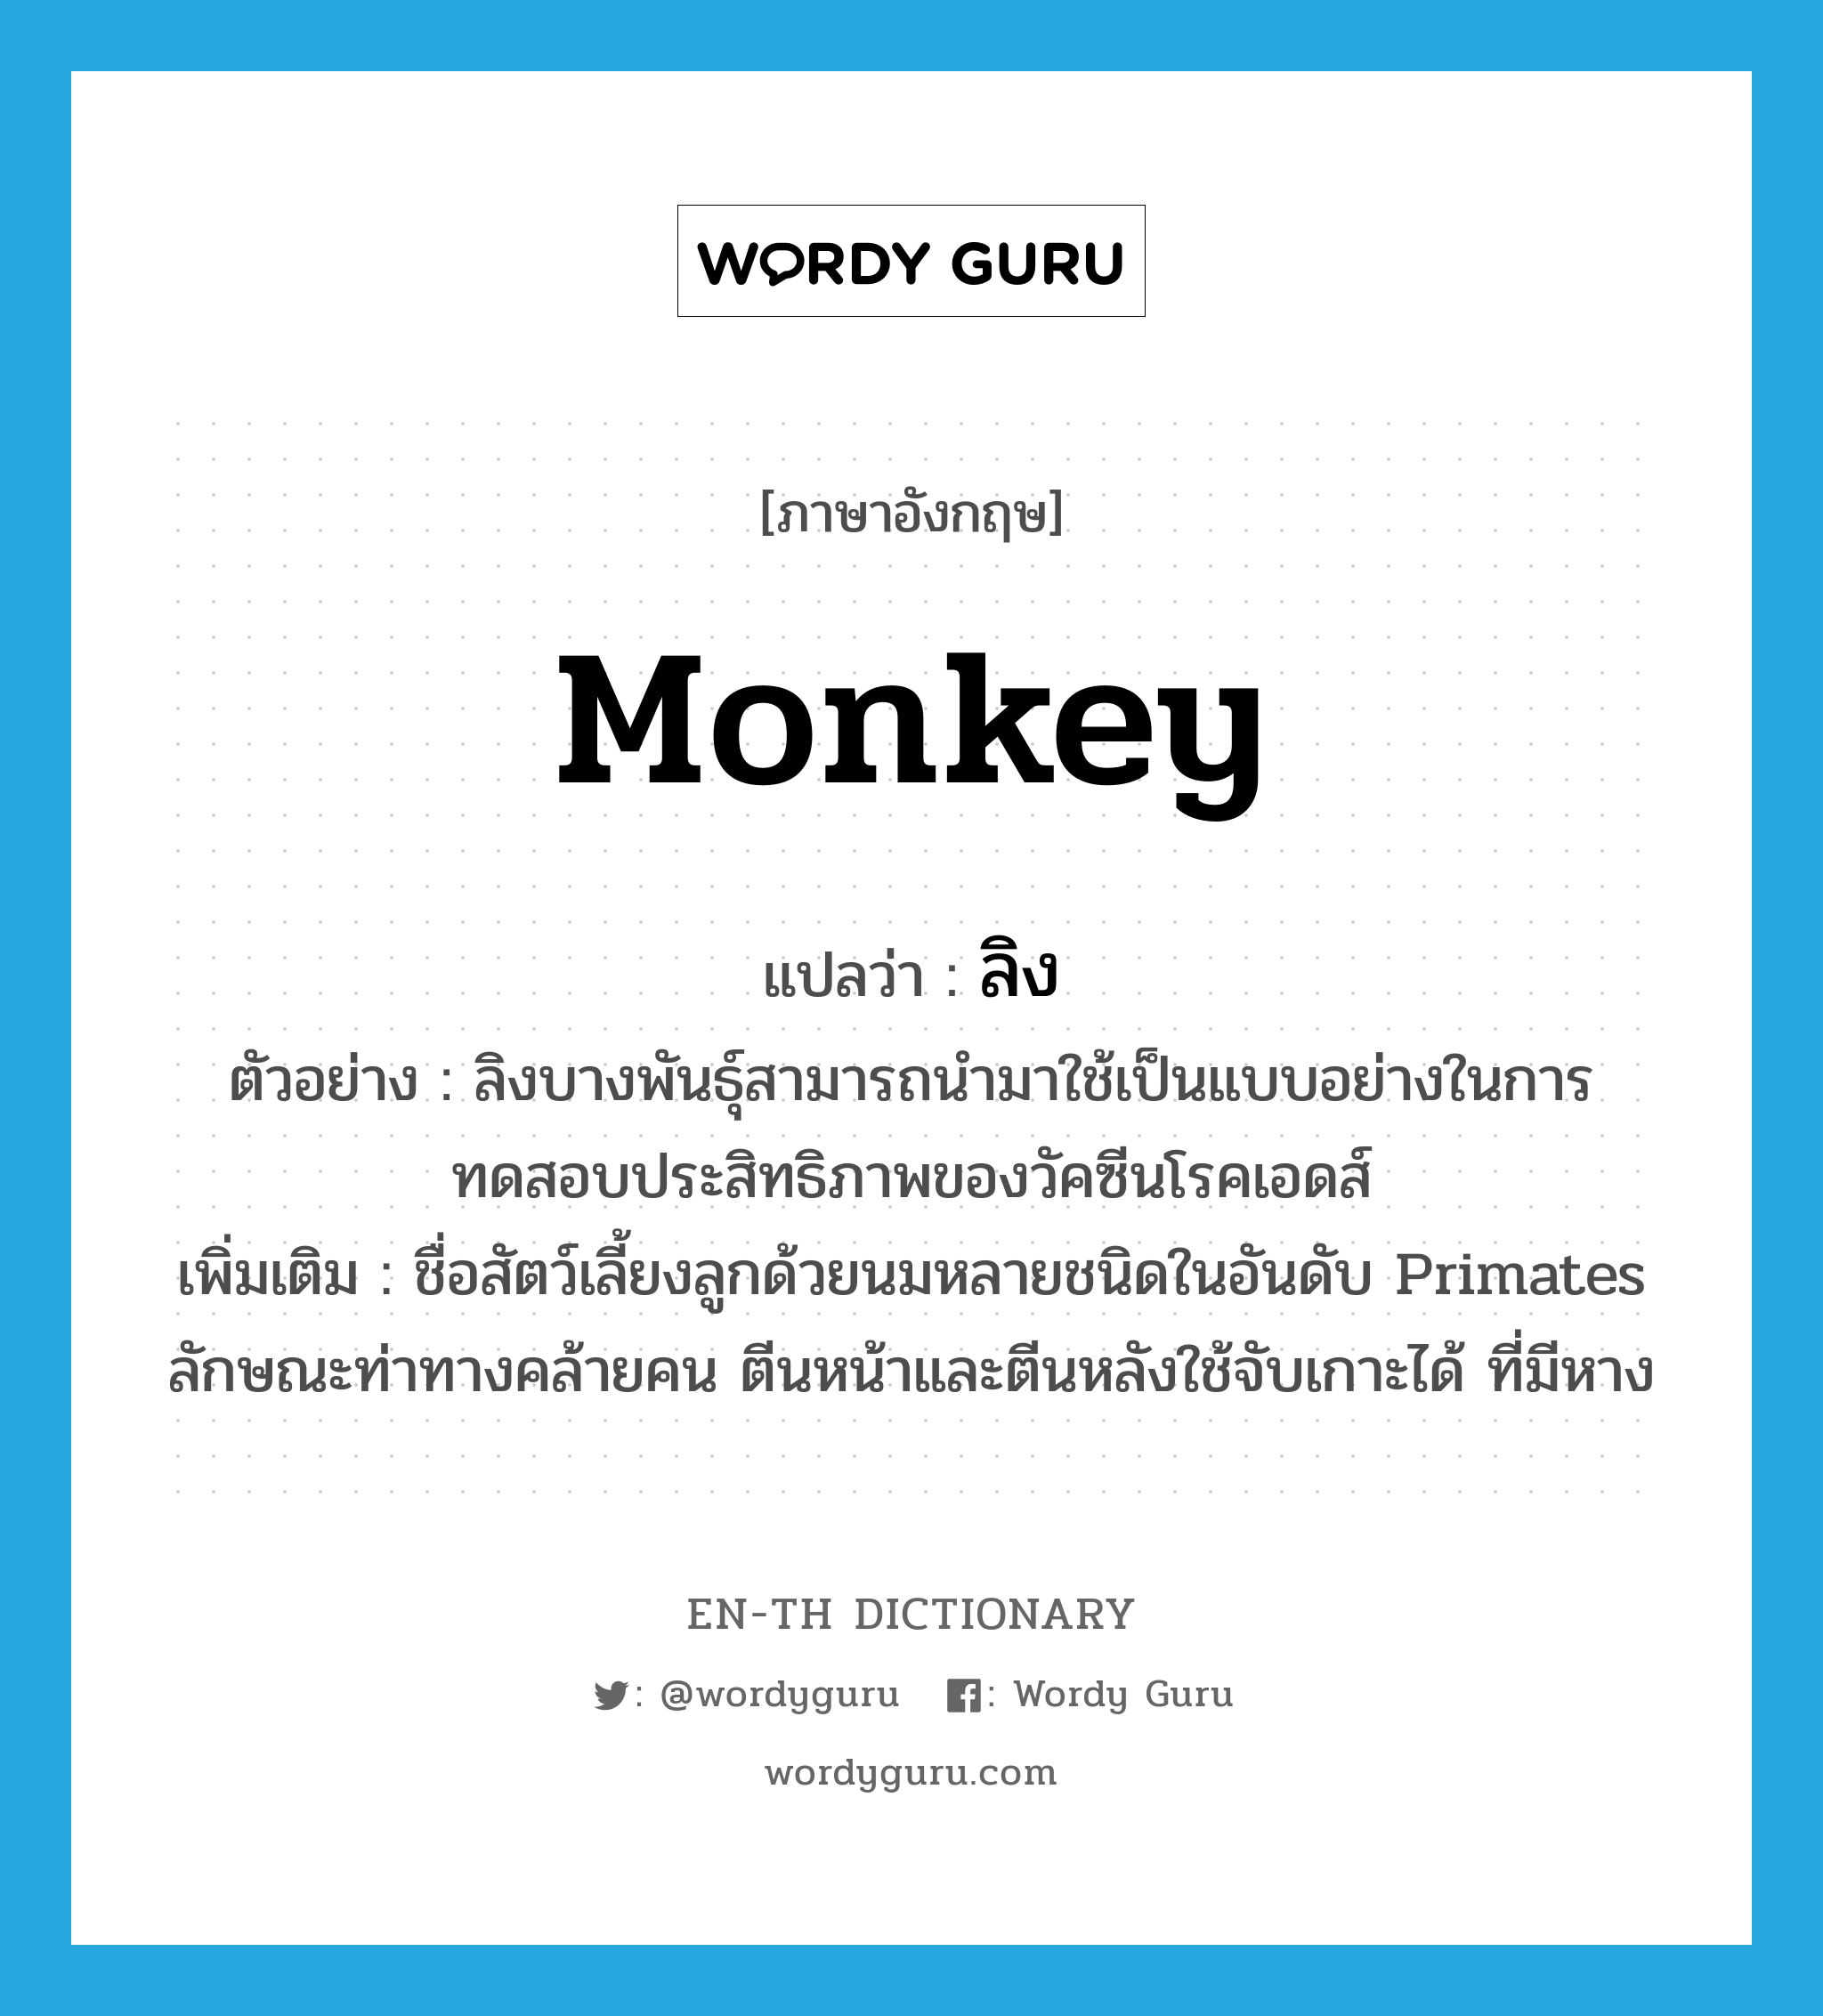 ลิง ภาษาอังกฤษ?, คำศัพท์ภาษาอังกฤษ ลิง แปลว่า monkey ประเภท N ตัวอย่าง ลิงบางพันธุ์สามารถนำมาใช้เป็นแบบอย่างในการทดสอบประสิทธิภาพของวัคซีนโรคเอดส์ เพิ่มเติม ชื่อสัตว์เลี้ยงลูกด้วยนมหลายชนิดในอันดับ Primates ลักษณะท่าทางคล้ายคน ตีนหน้าและตีนหลังใช้จับเกาะได้ ที่มีหาง หมวด N